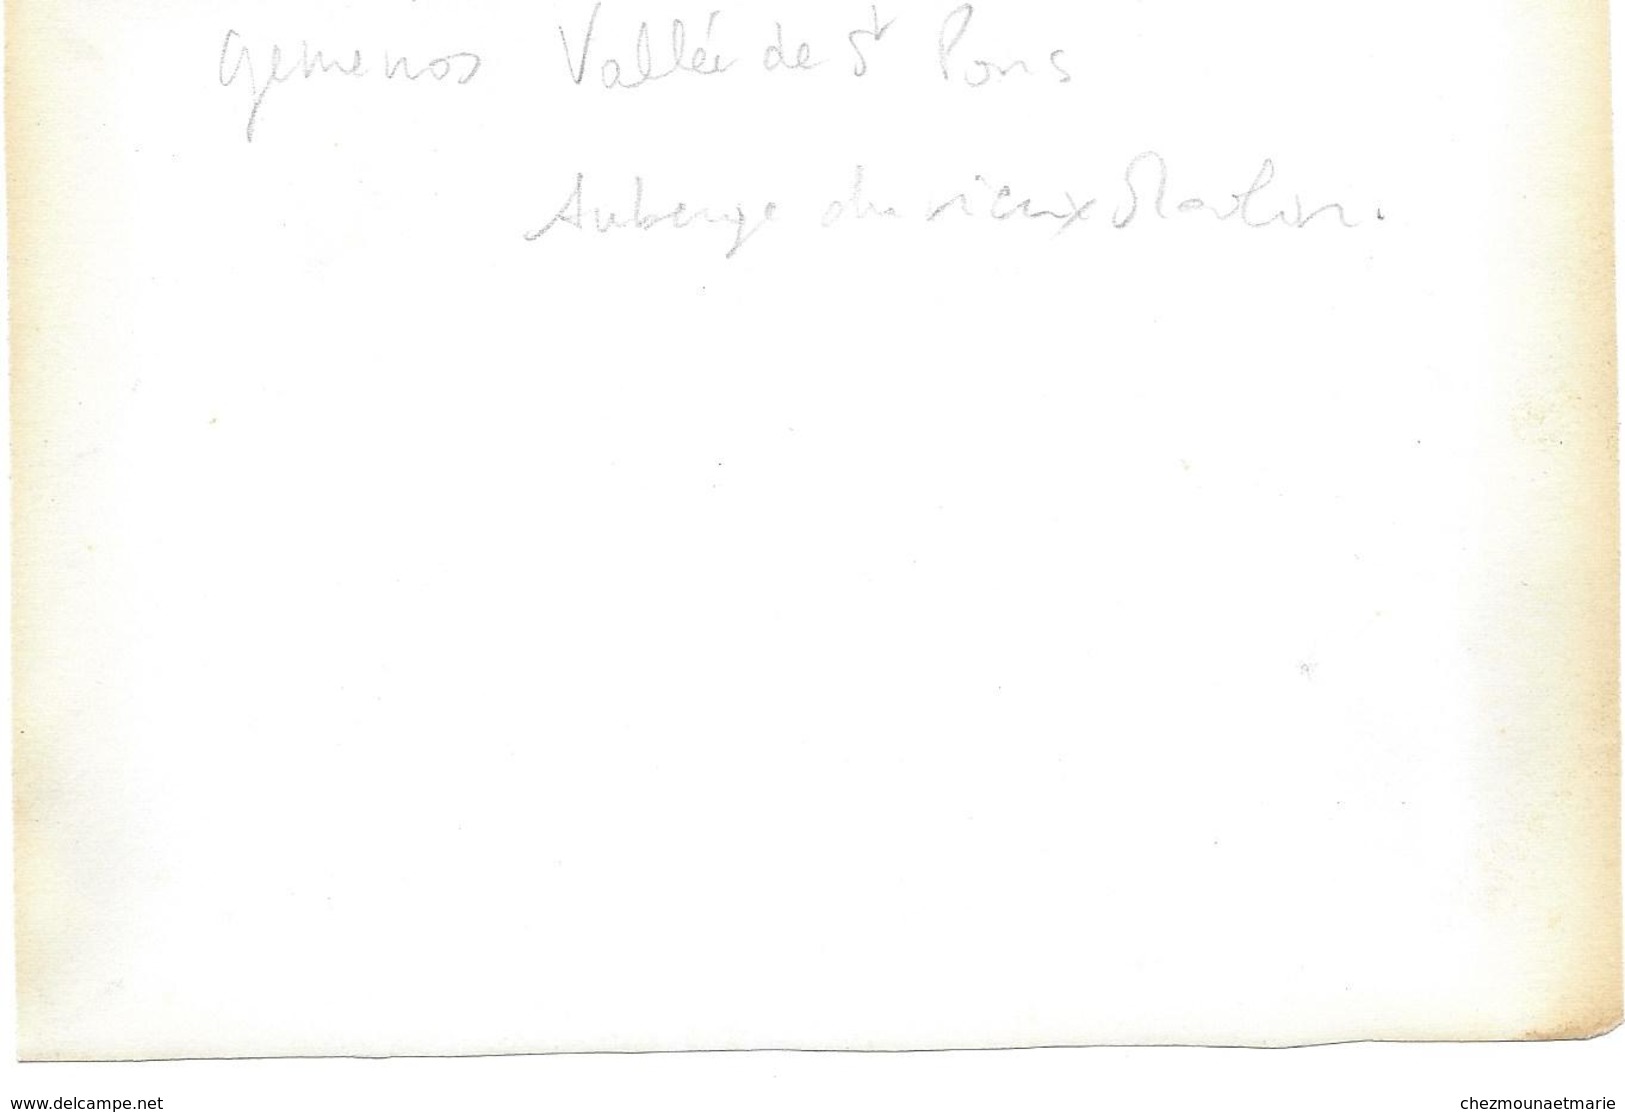 GEMENOS - AUBERGE AU VIEUX MOULIN - MAISON UNION DEPARTEMENTALE SYNDICATS BOUCHES DU RHONE - PHOTO 17 X 12 CM - Métiers